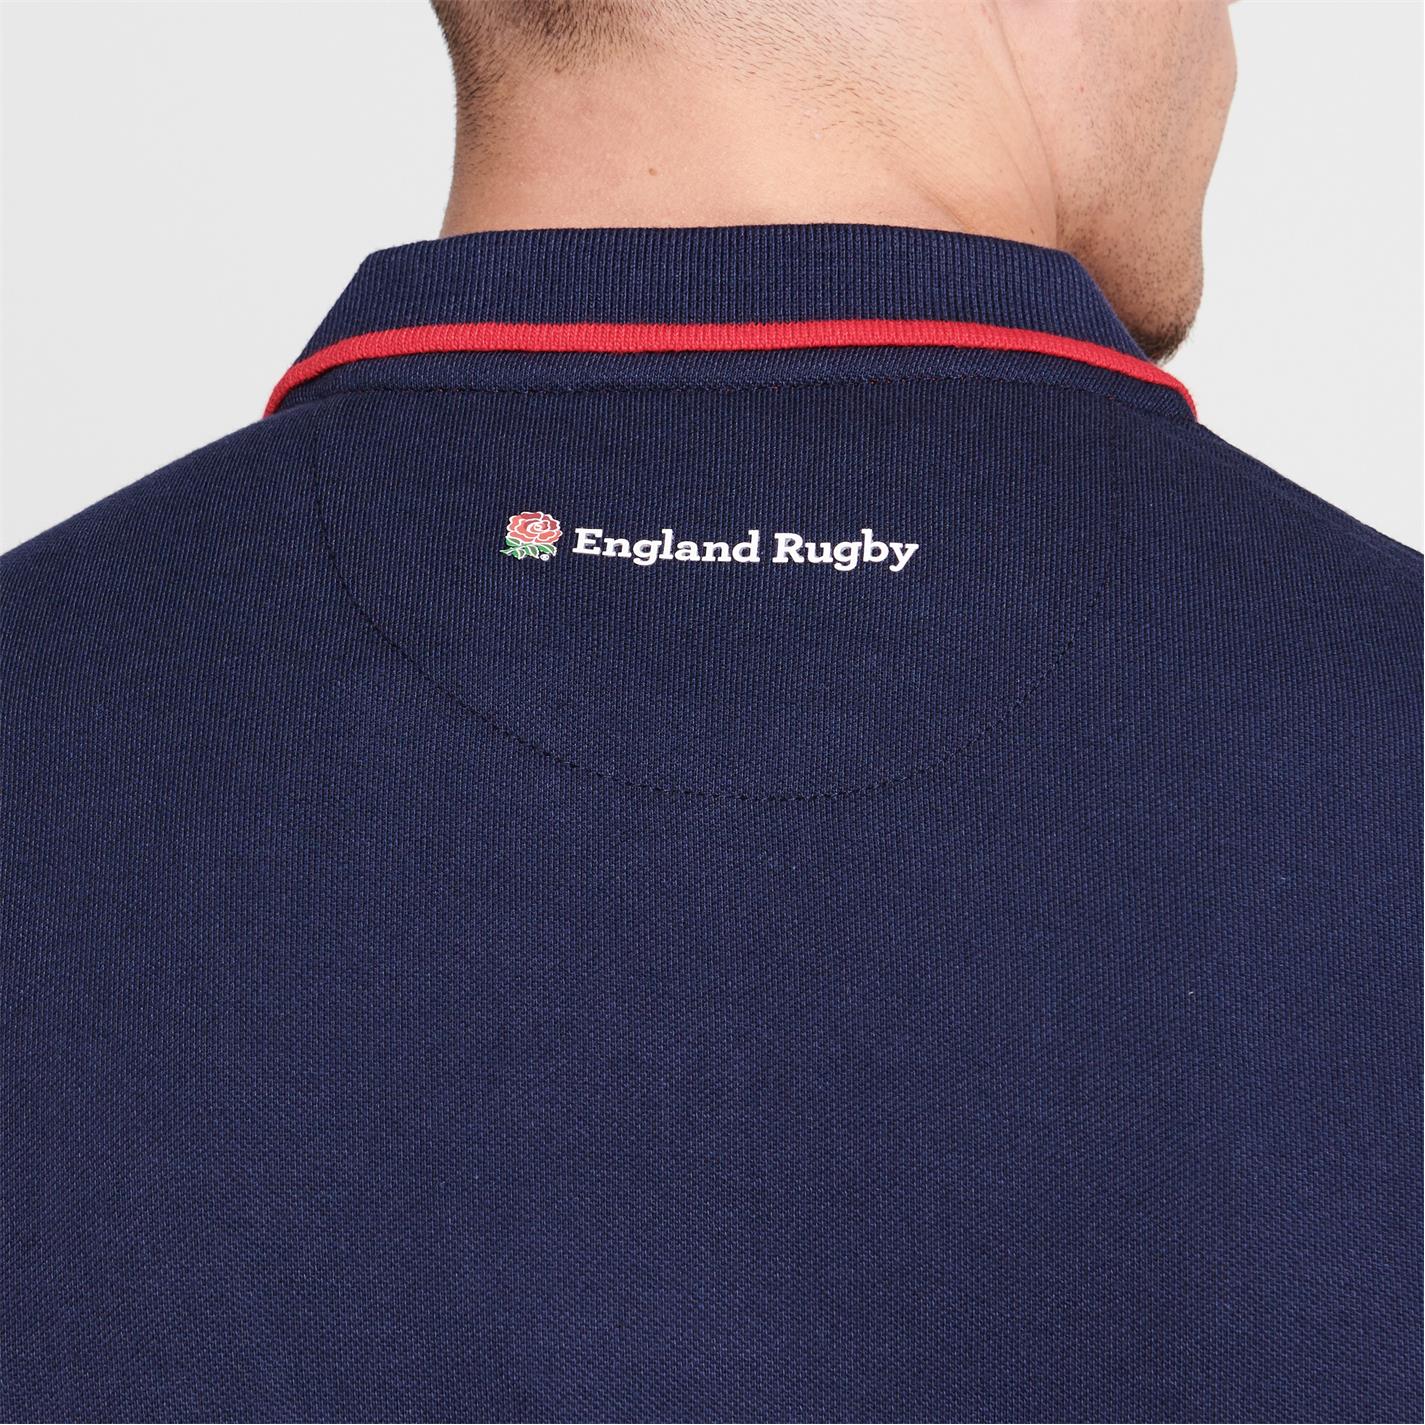 Tricouri Polo RFU England Rugby Core pentru Barbati